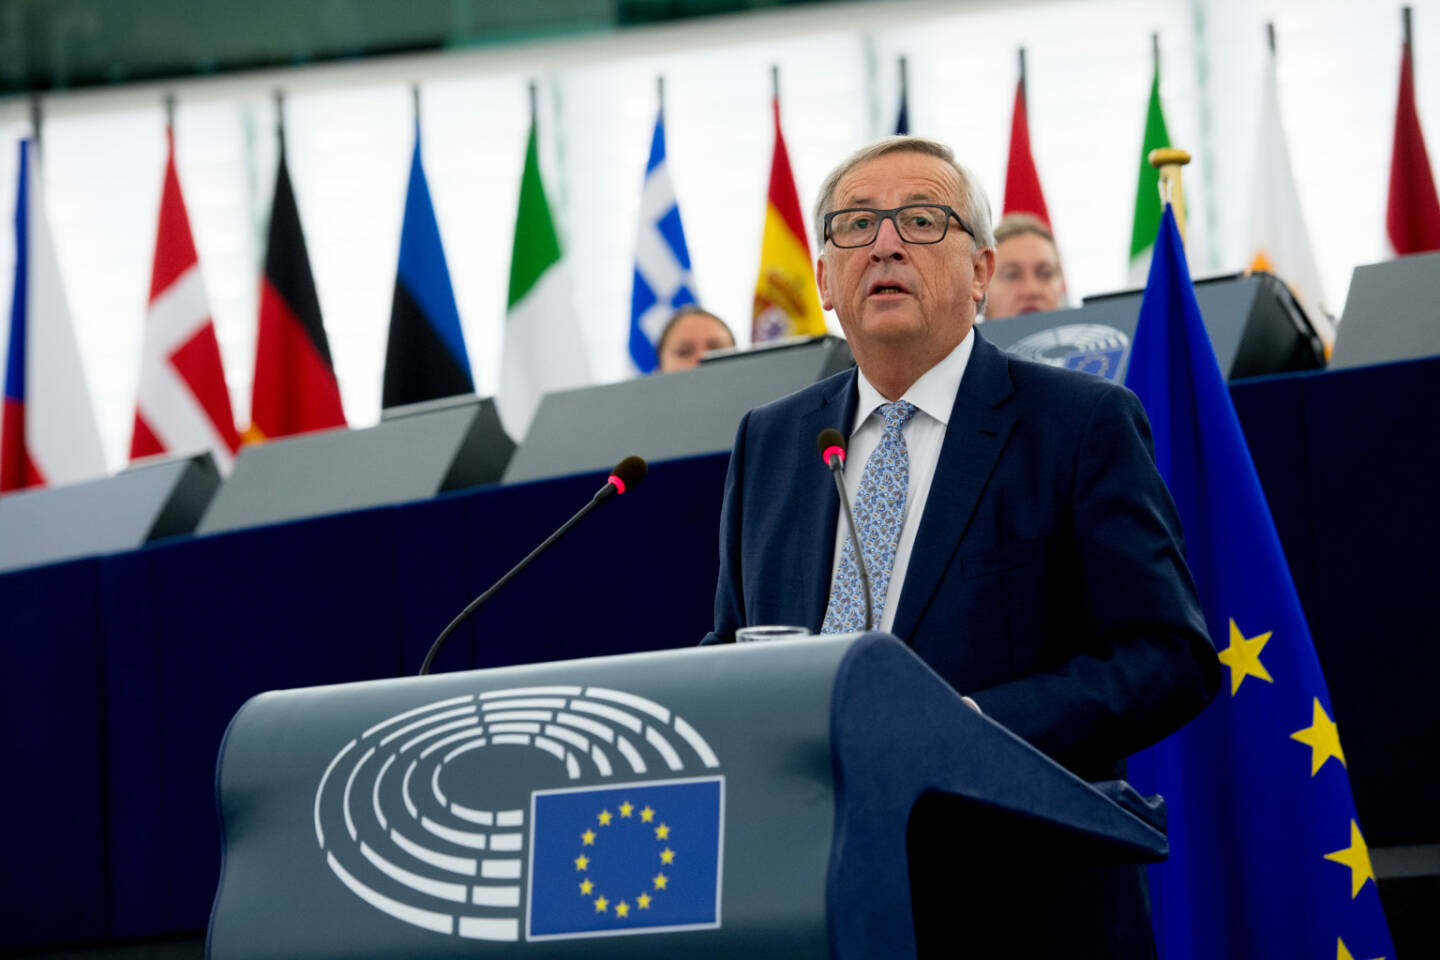 Vertretung der EU-Kommission in Österreich: Neue EU-Behörde für Arbeitnehmerrechte angekündigt, Kommissionspräsident Jean-Claude Juncker im Europäischen Parlament in Straßburg; Foto: EU/Etienne Ansotte